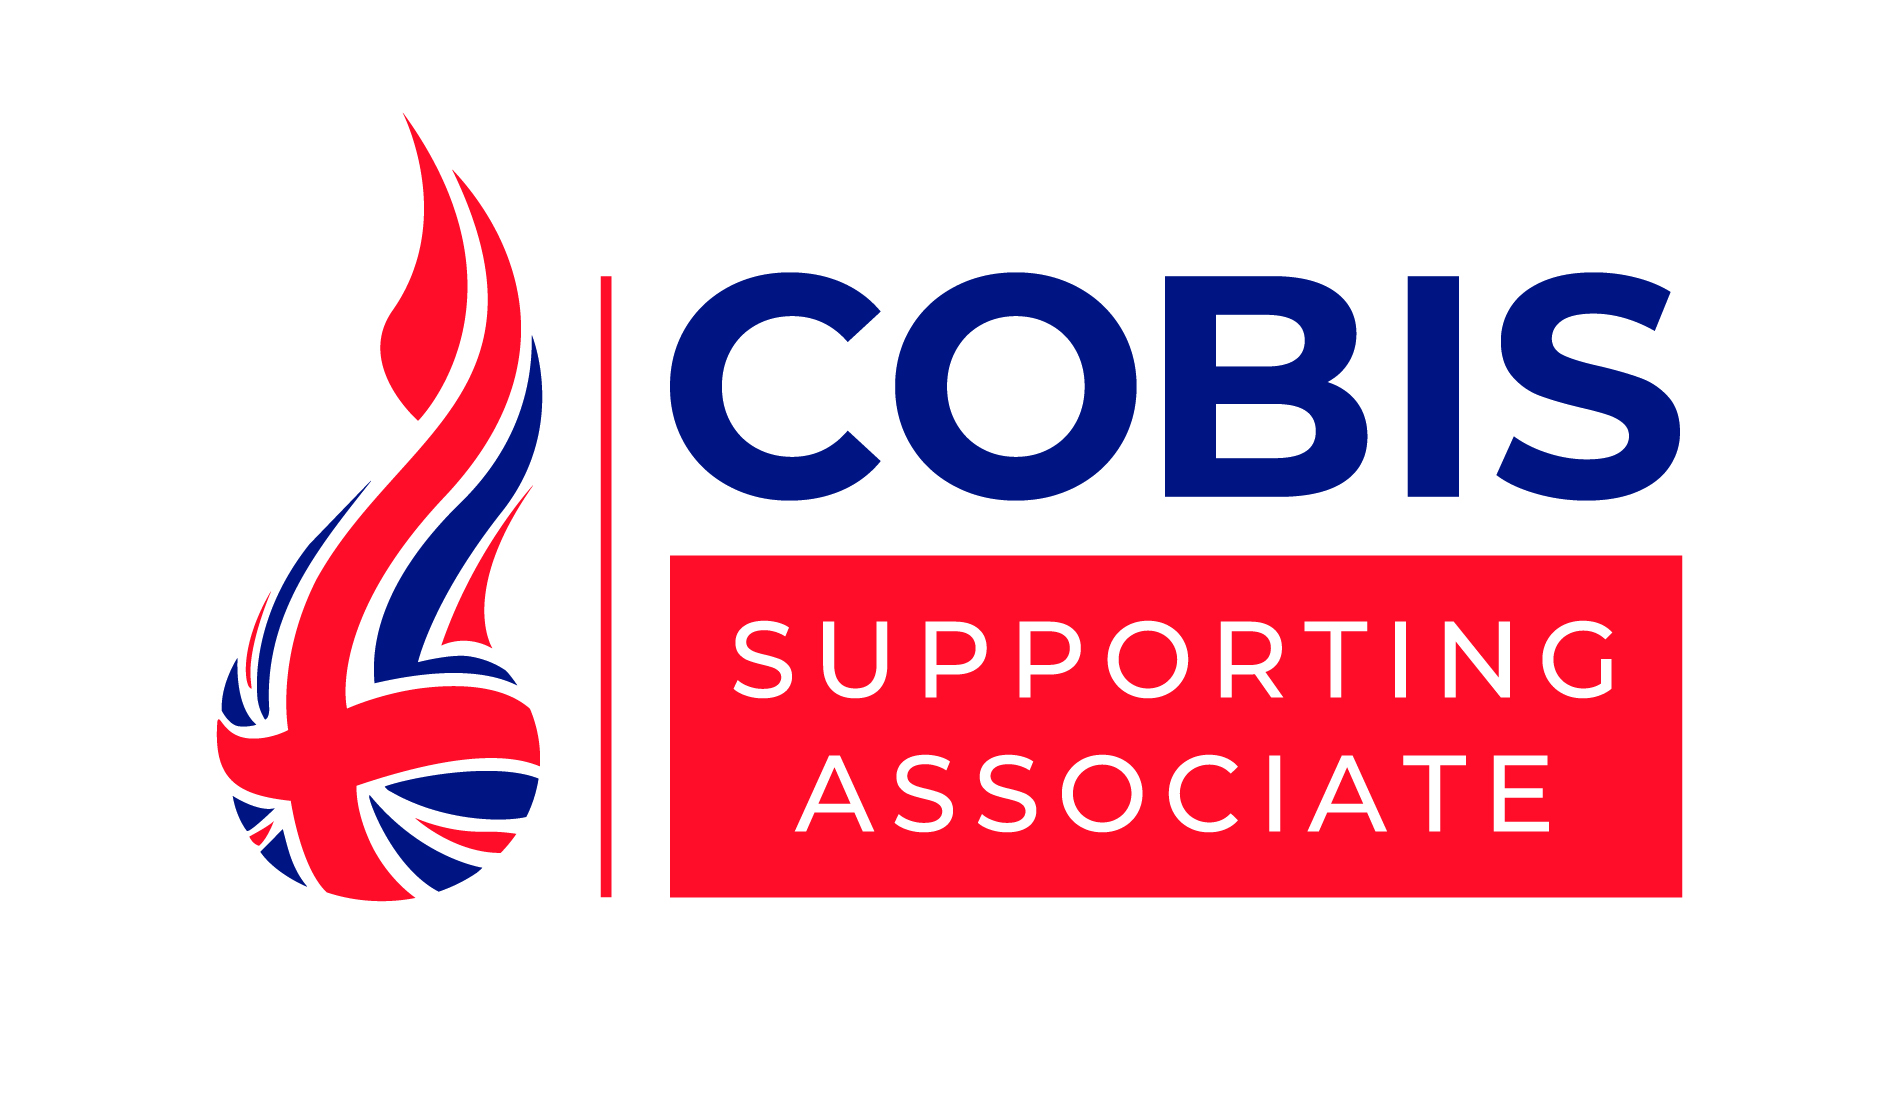 COBIS-Supporting Associate-CMYK (1)